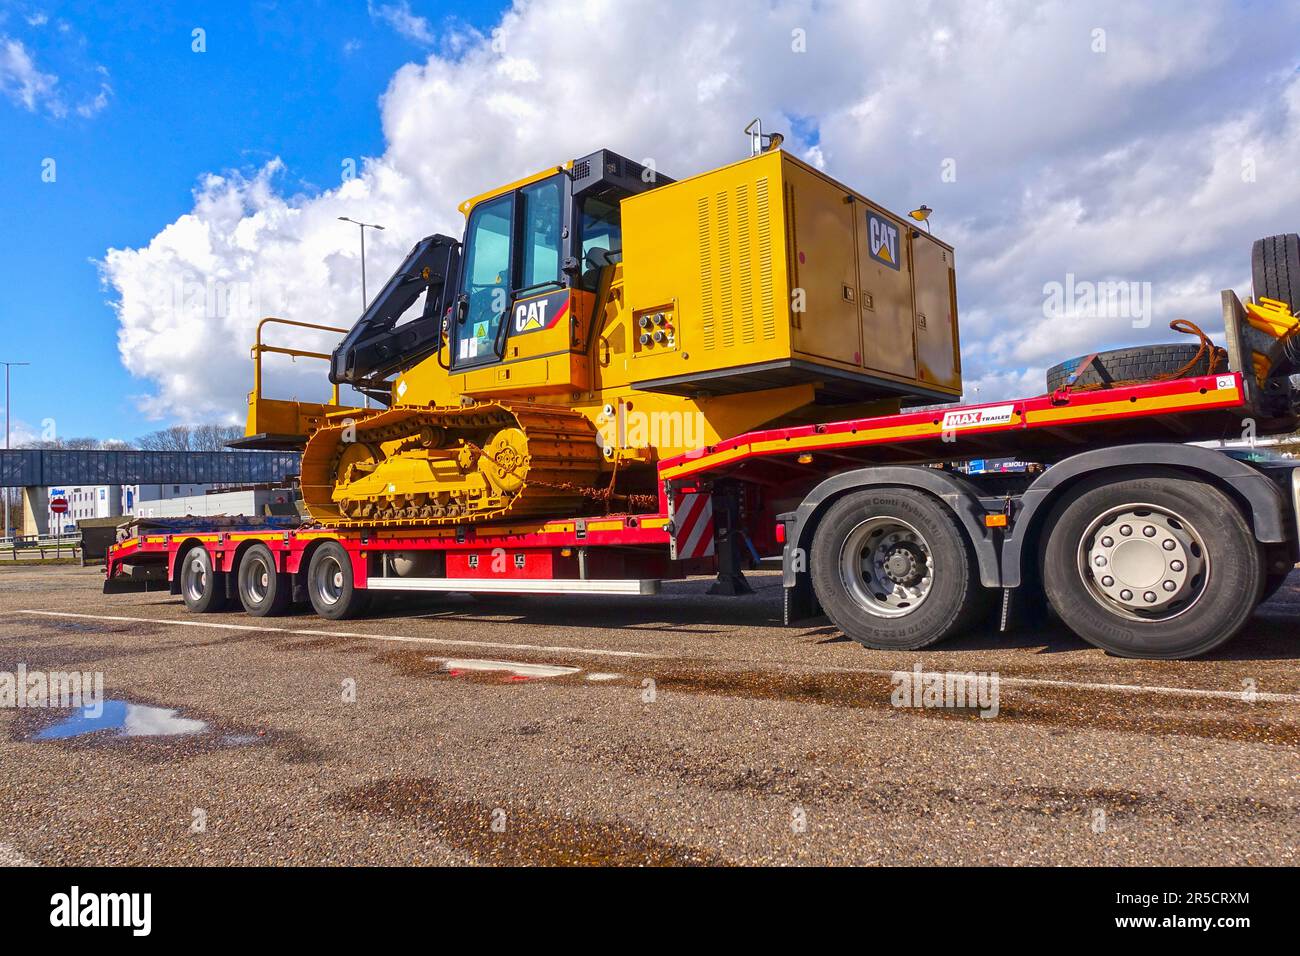 AACHEN, NRW, ALLEMAGNE - 12 mars 2020 : transport lourd d'une grosse chenille sur un camion de remorque spécial à faible charge, stationnement sur un arrêt de camion Banque D'Images